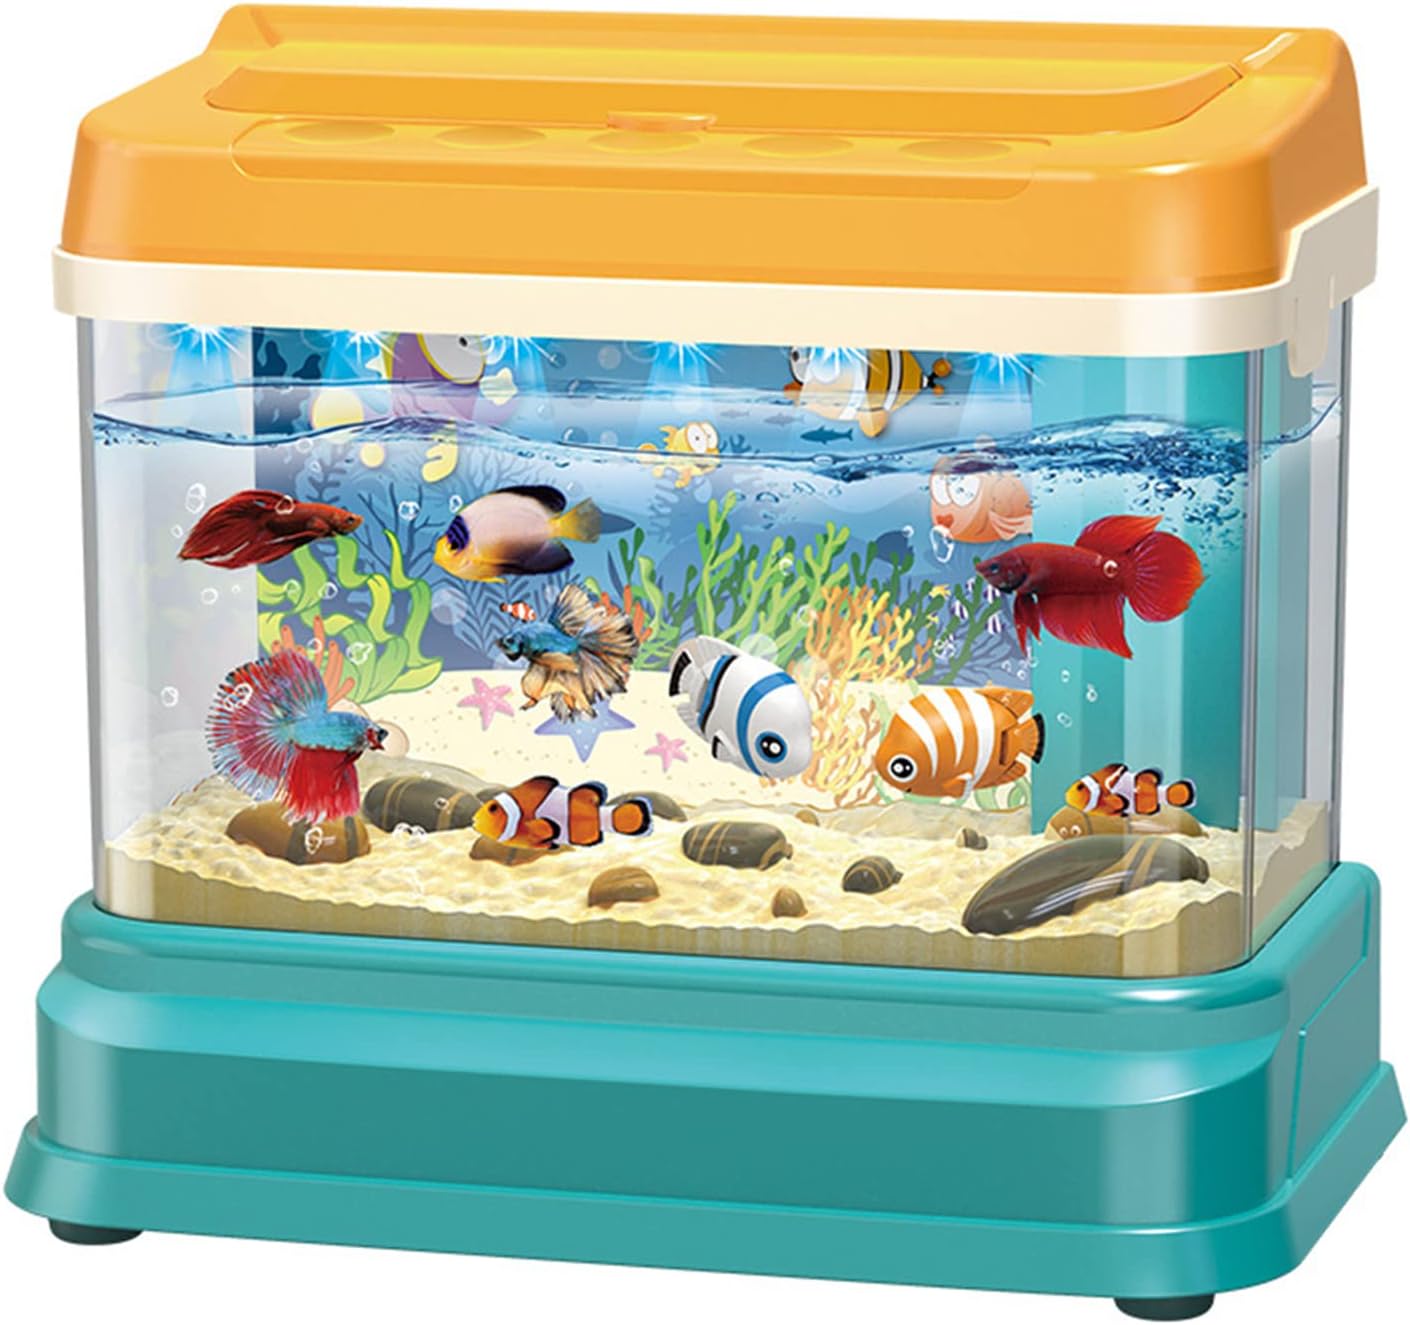 Aquarium Toys